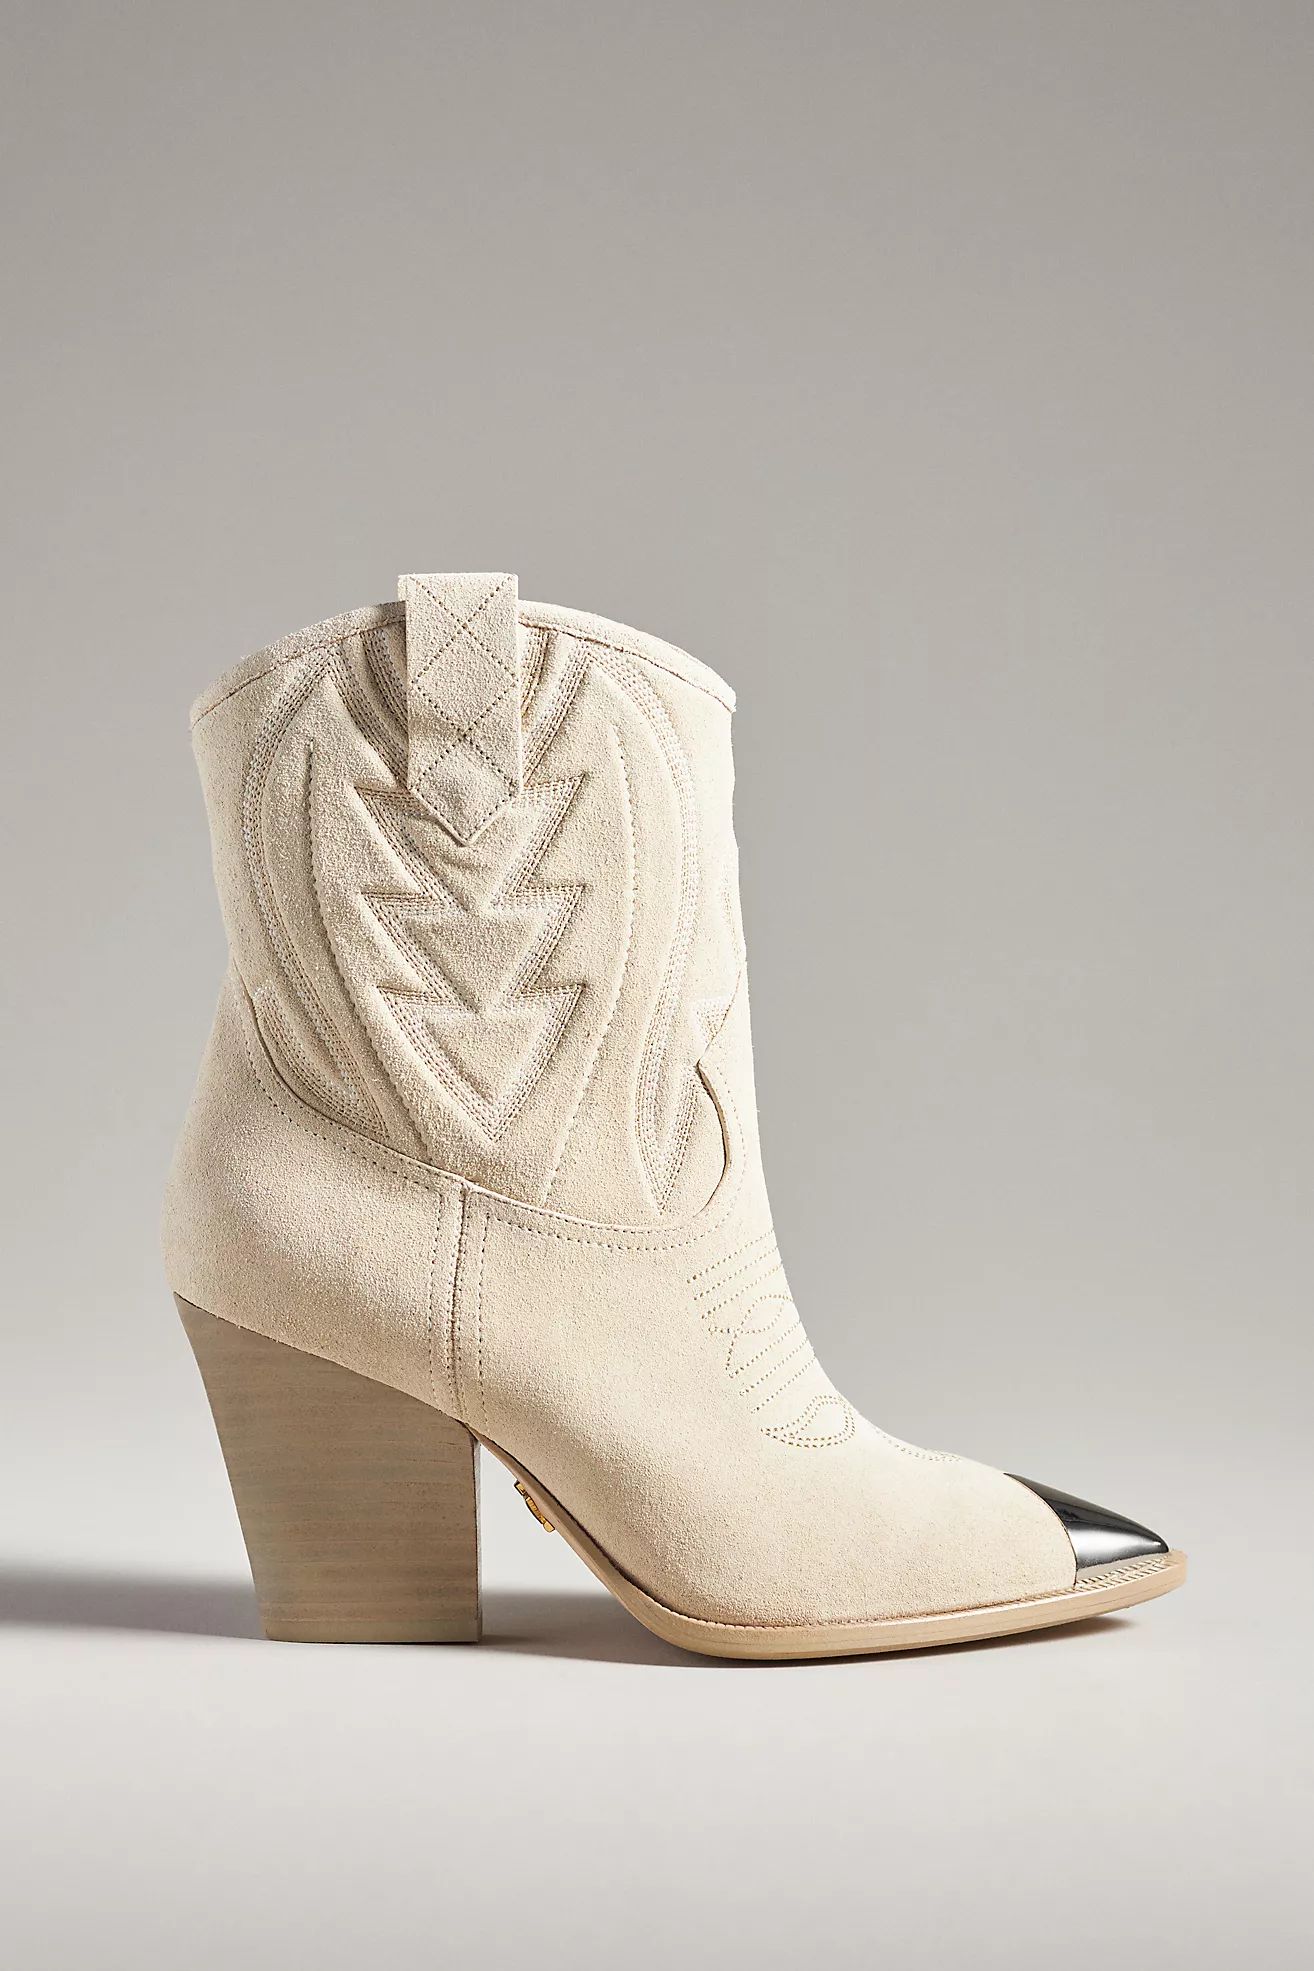 Lola Cruz Gambels Western Boots | Anthropologie (US)